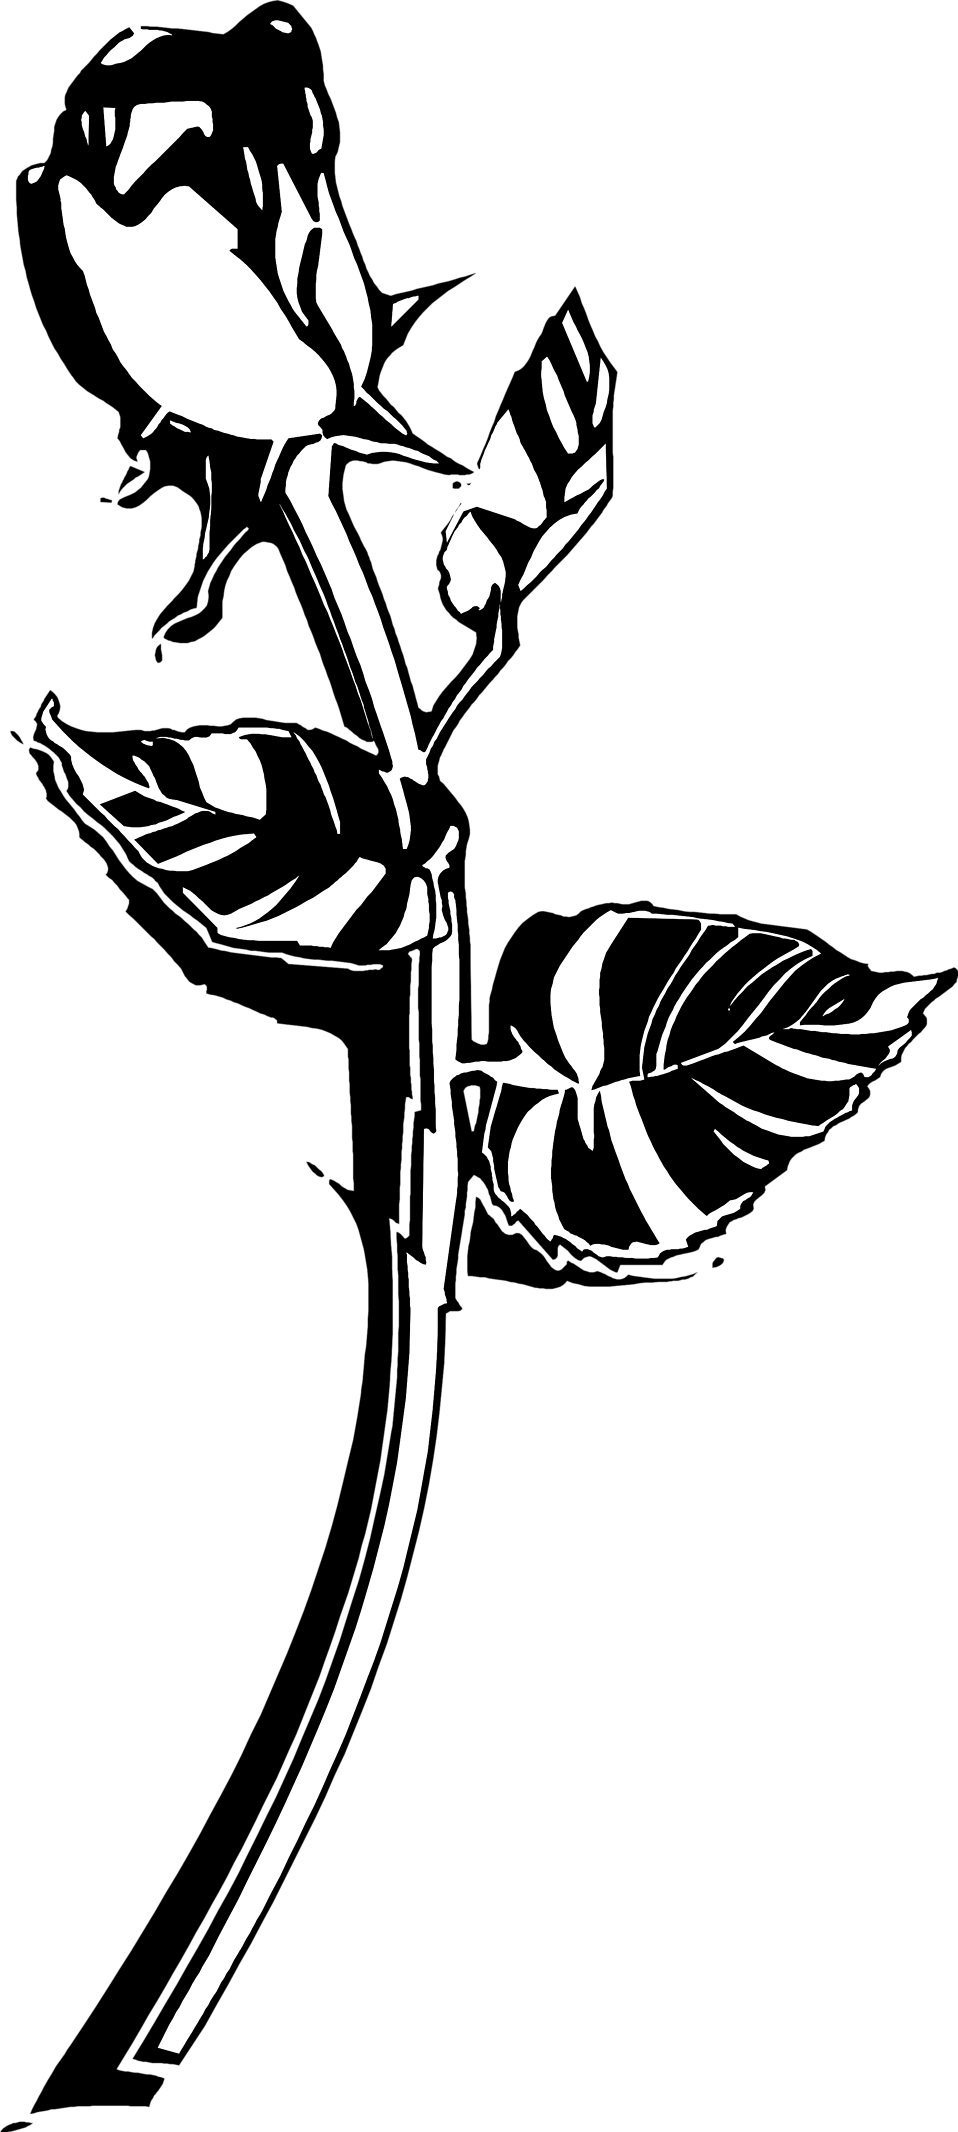 Image de téléchargement de rose noir et blanc de vecteur